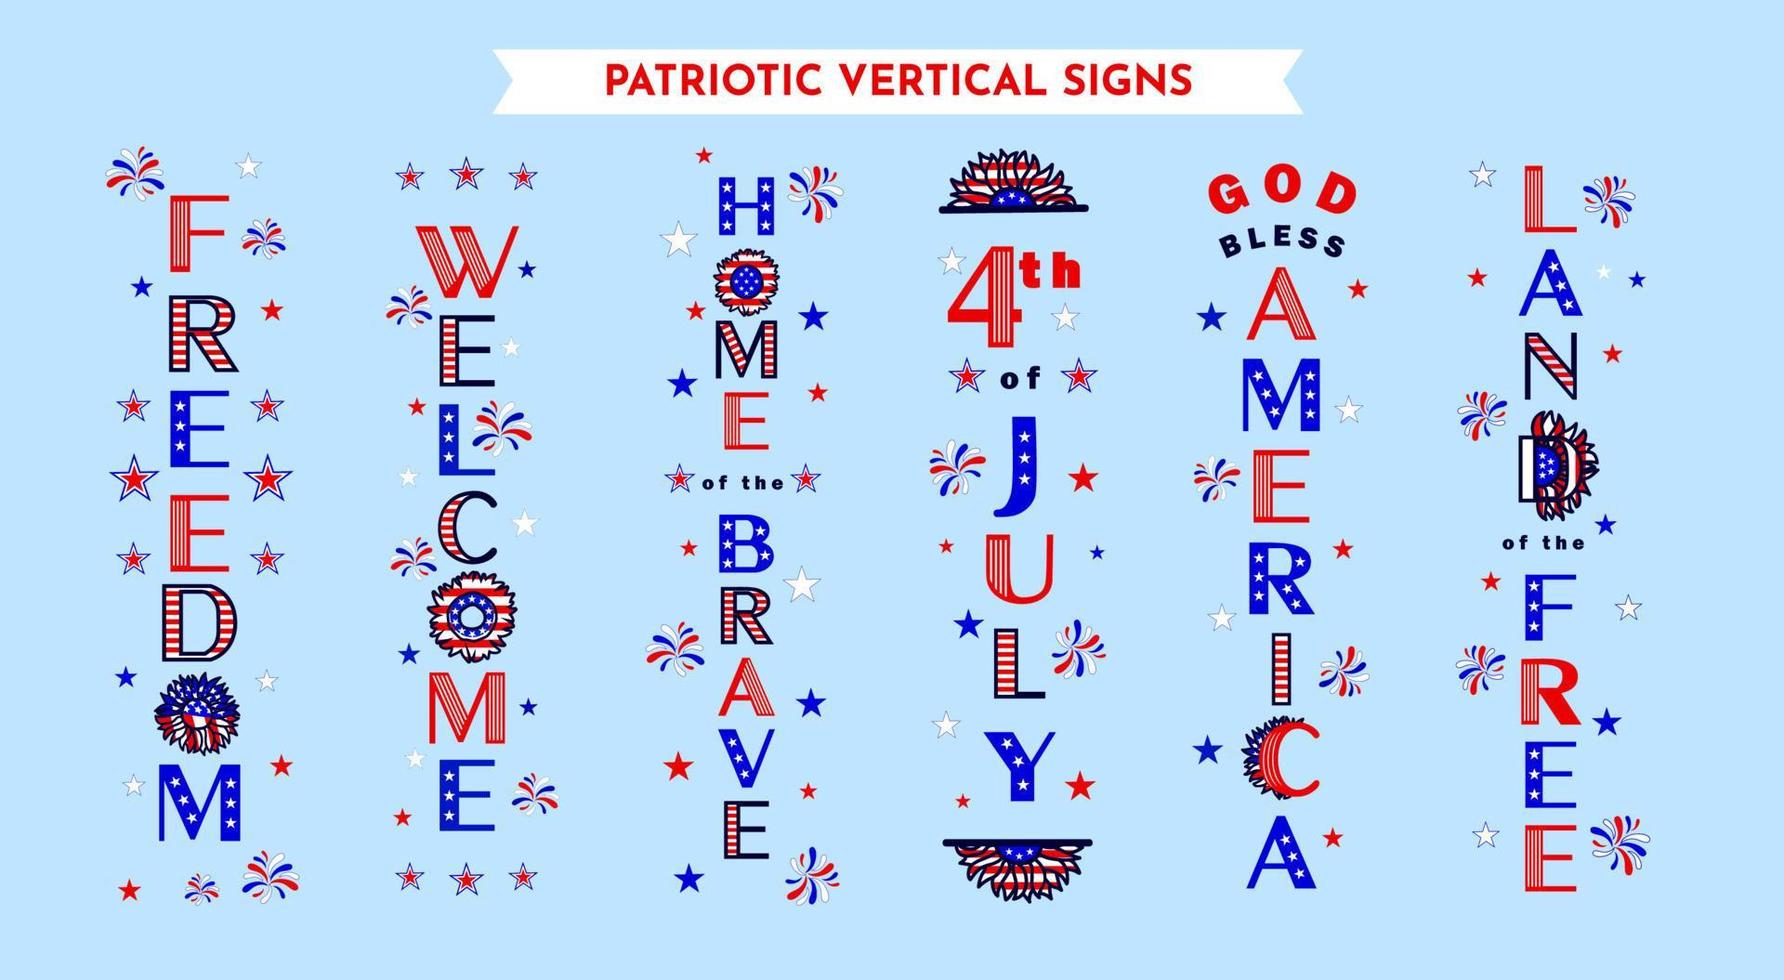 6 motifs de panneaux de porche verticaux avec des citations patriotiques de bienvenue, que Dieu bénisse l'Amérique, le 4 juillet, la maison des braves, la liberté, la terre de la liberté. affiche de fête typographique. illustration vectorielle. vecteur